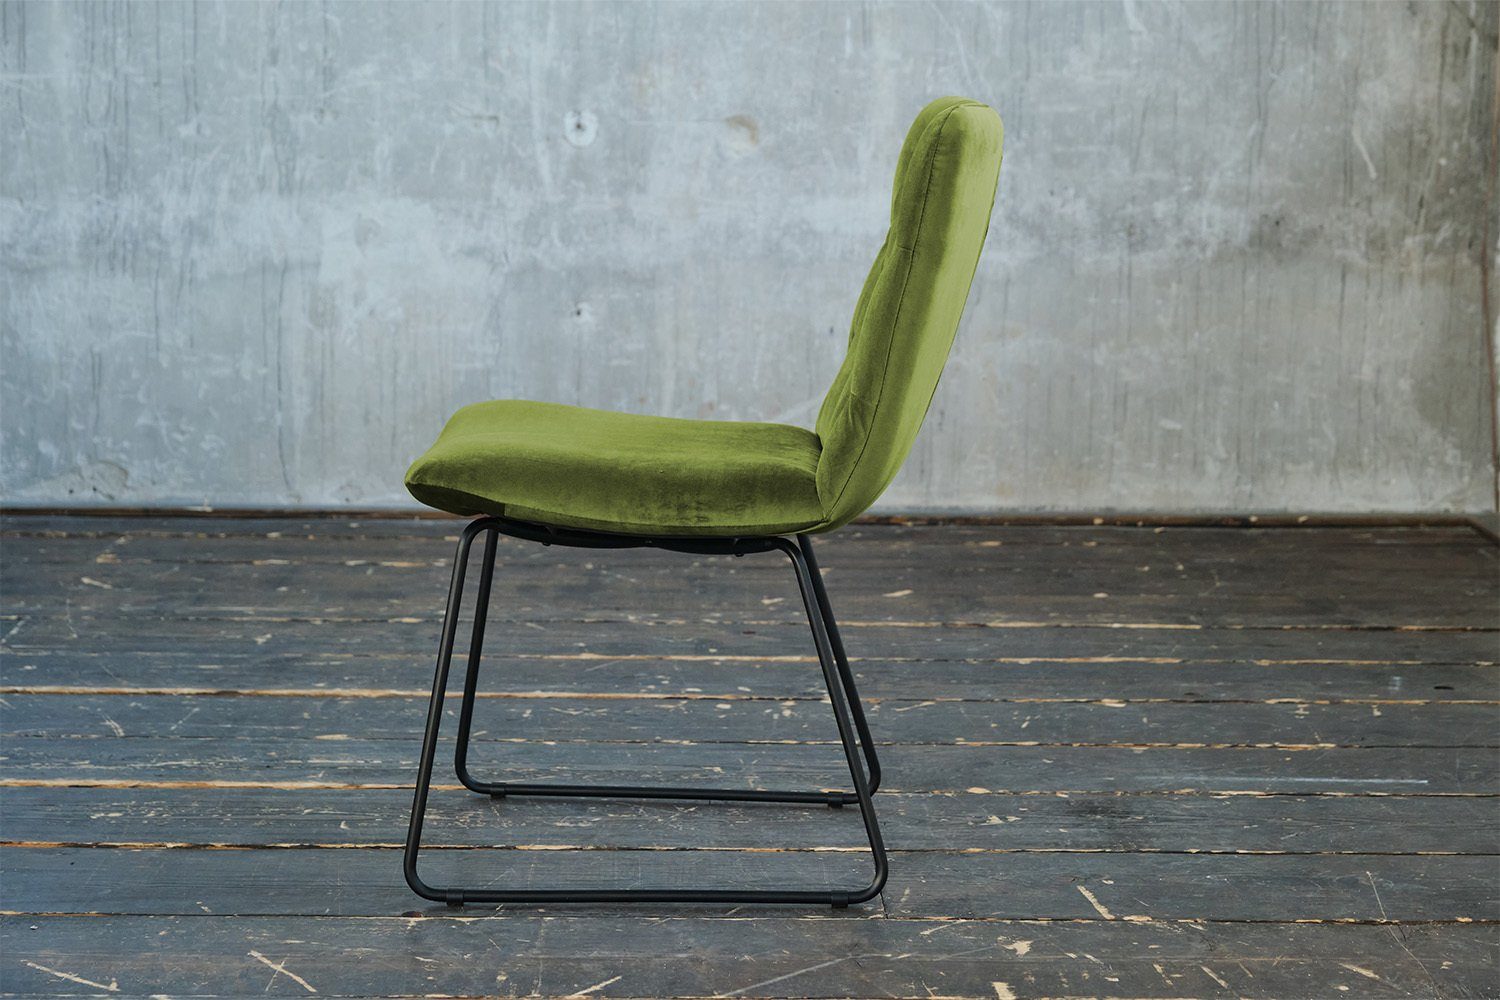 Farben ohne NEW Esszimmerstuhl CHARME, mit Stuhl KAWOLA od. Drehfunktion, Velvet, grün versch.